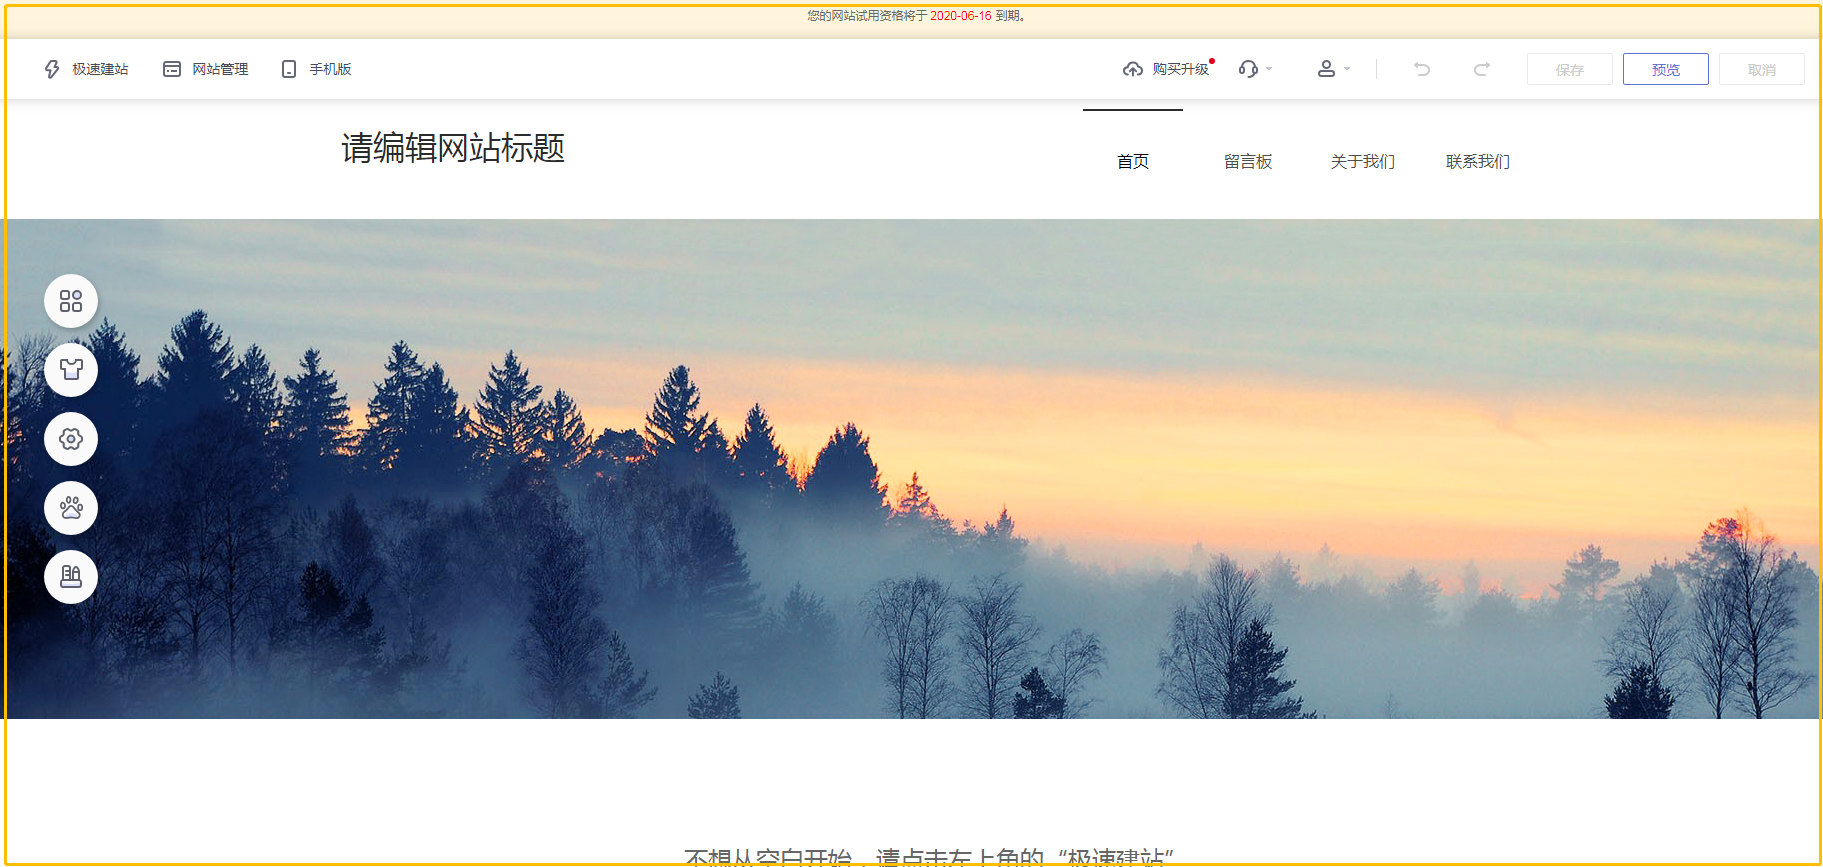 德庆县的企业如何低价建立自己的网站